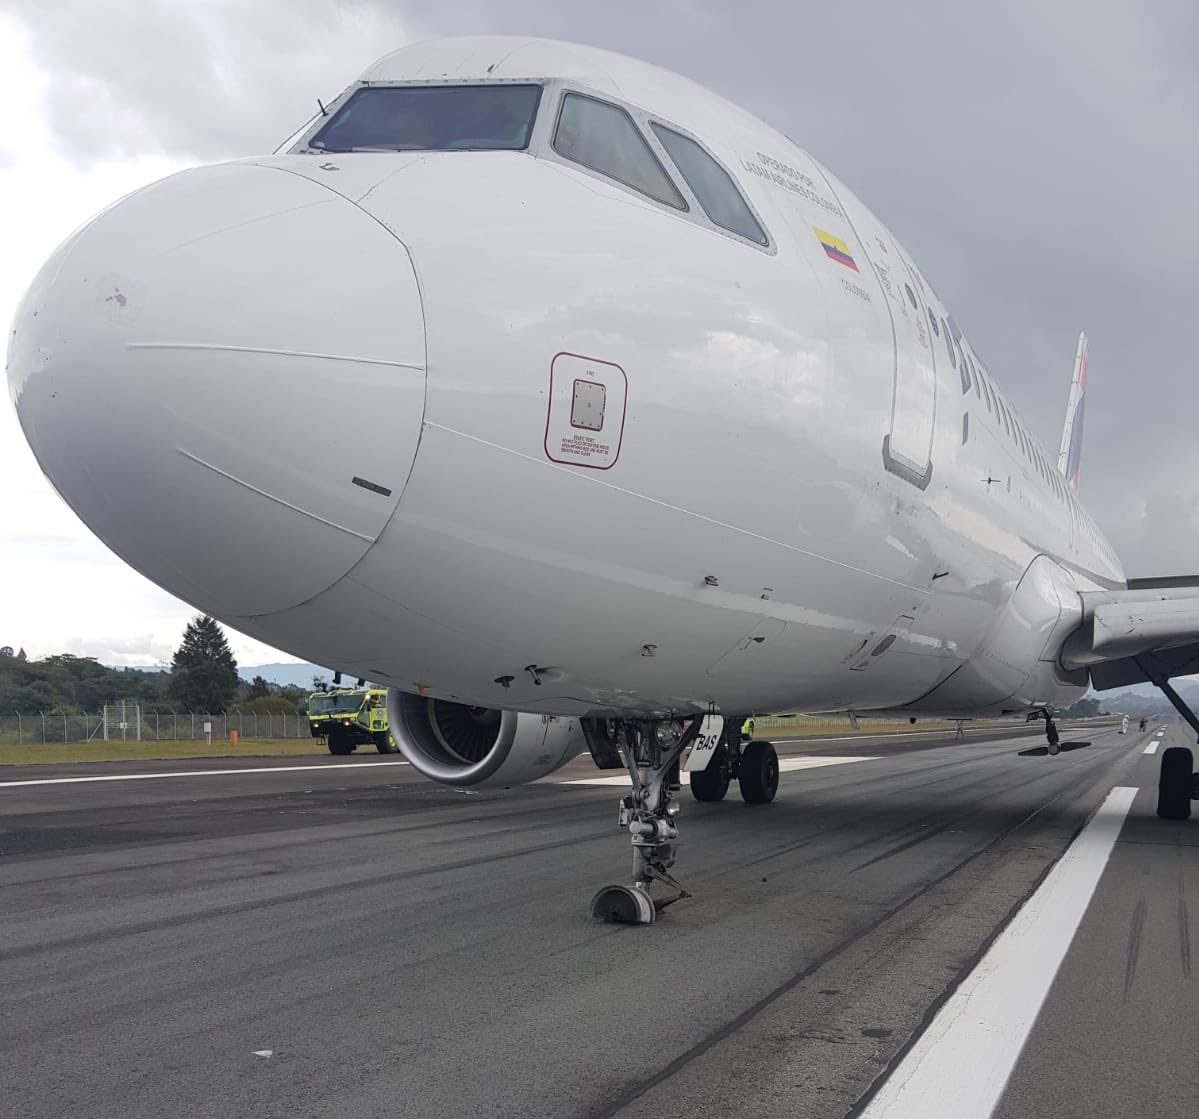 ¡Susto! Avión de Latam aterriza de emergencia en aeropuerto de Rionegro (VIDEO)